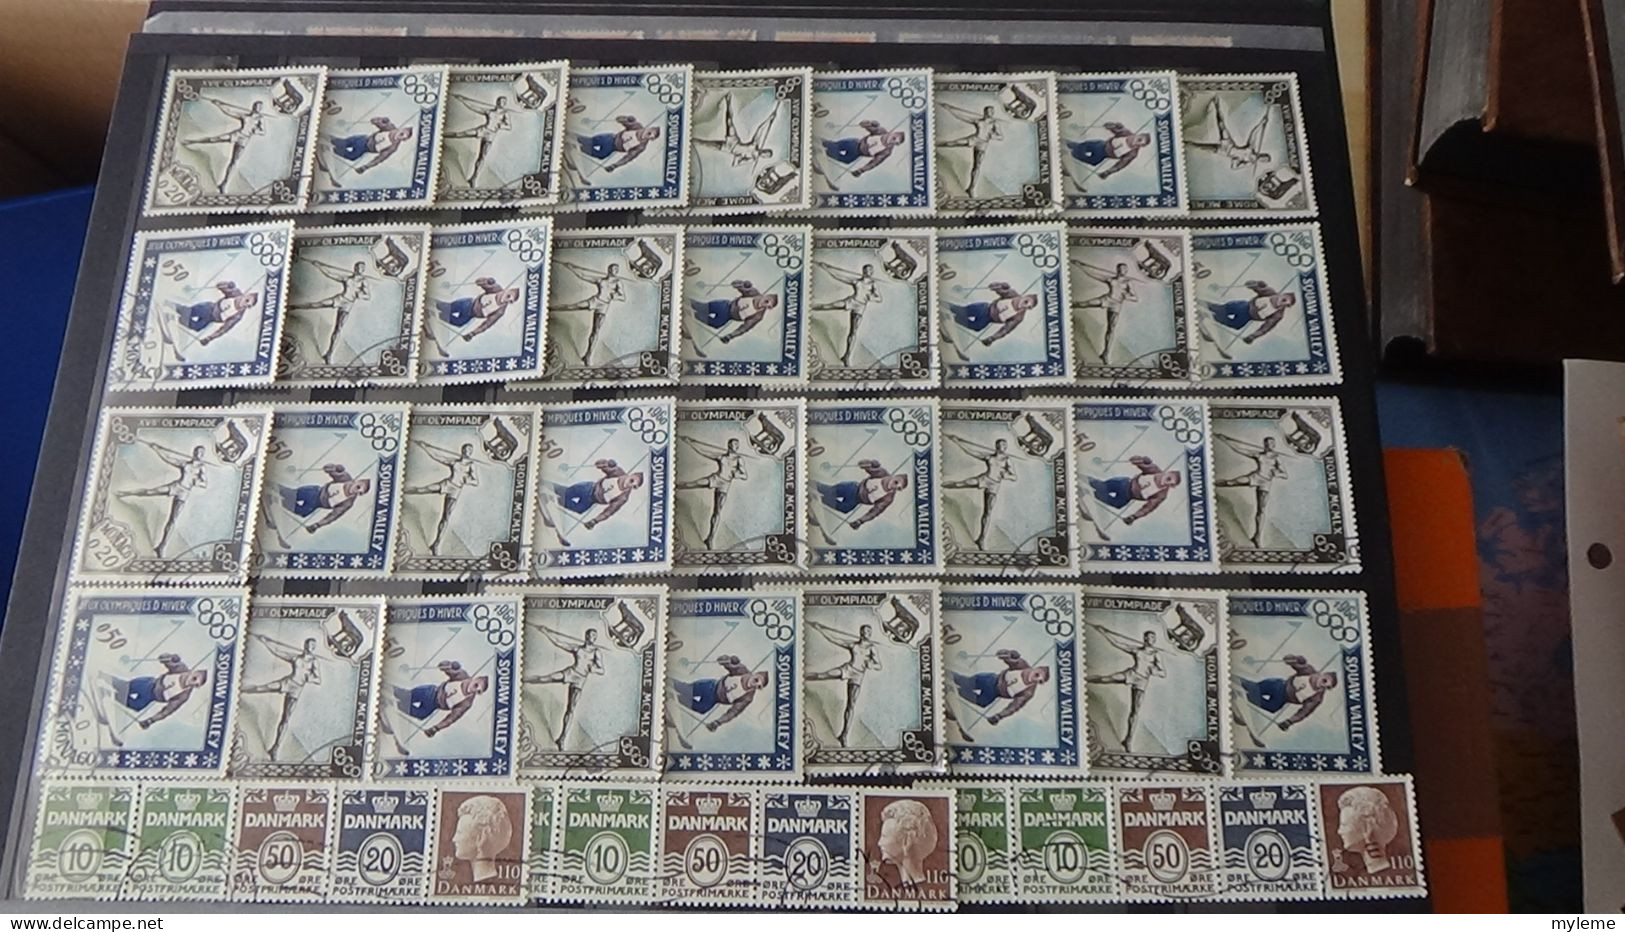 BF15 Ensemble de timbres oblitérés de divers pays dont bonnes petites valeurs par multiple  A saisir !!!.